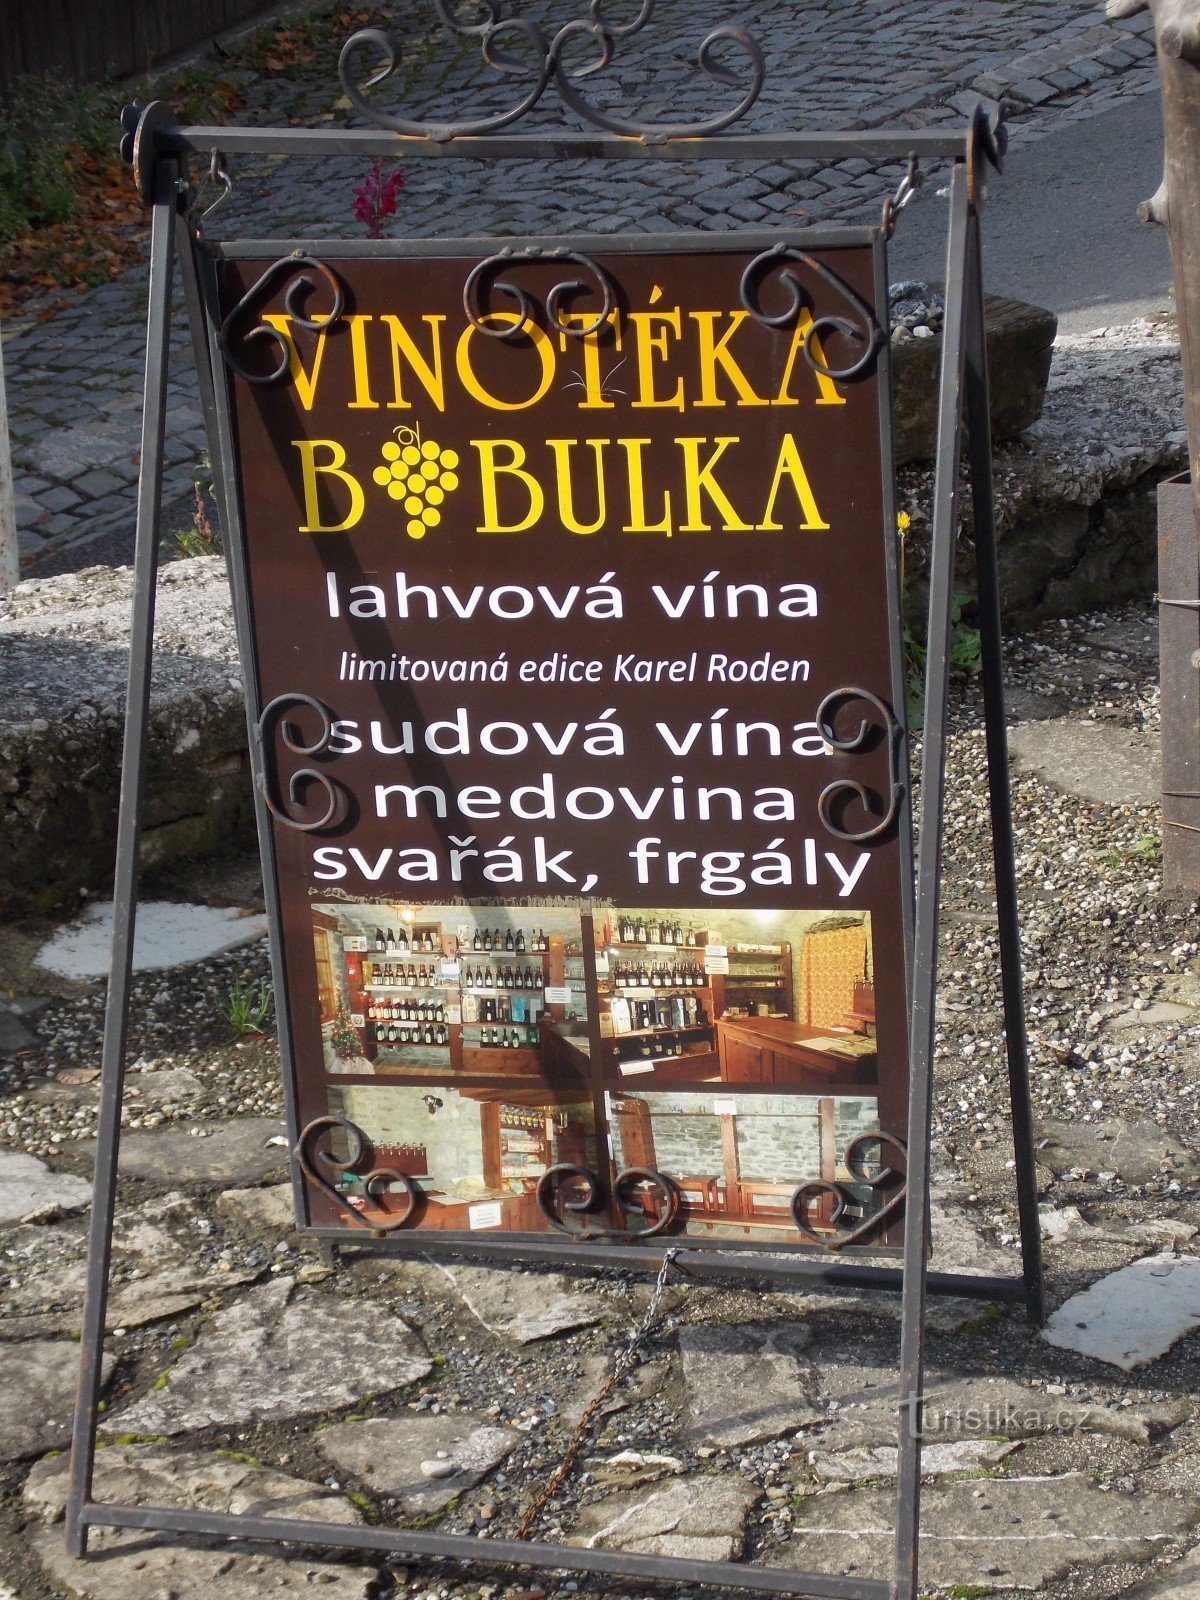 Para un buen vino, vaya a la tienda de vinos Bobulka en Štramberk